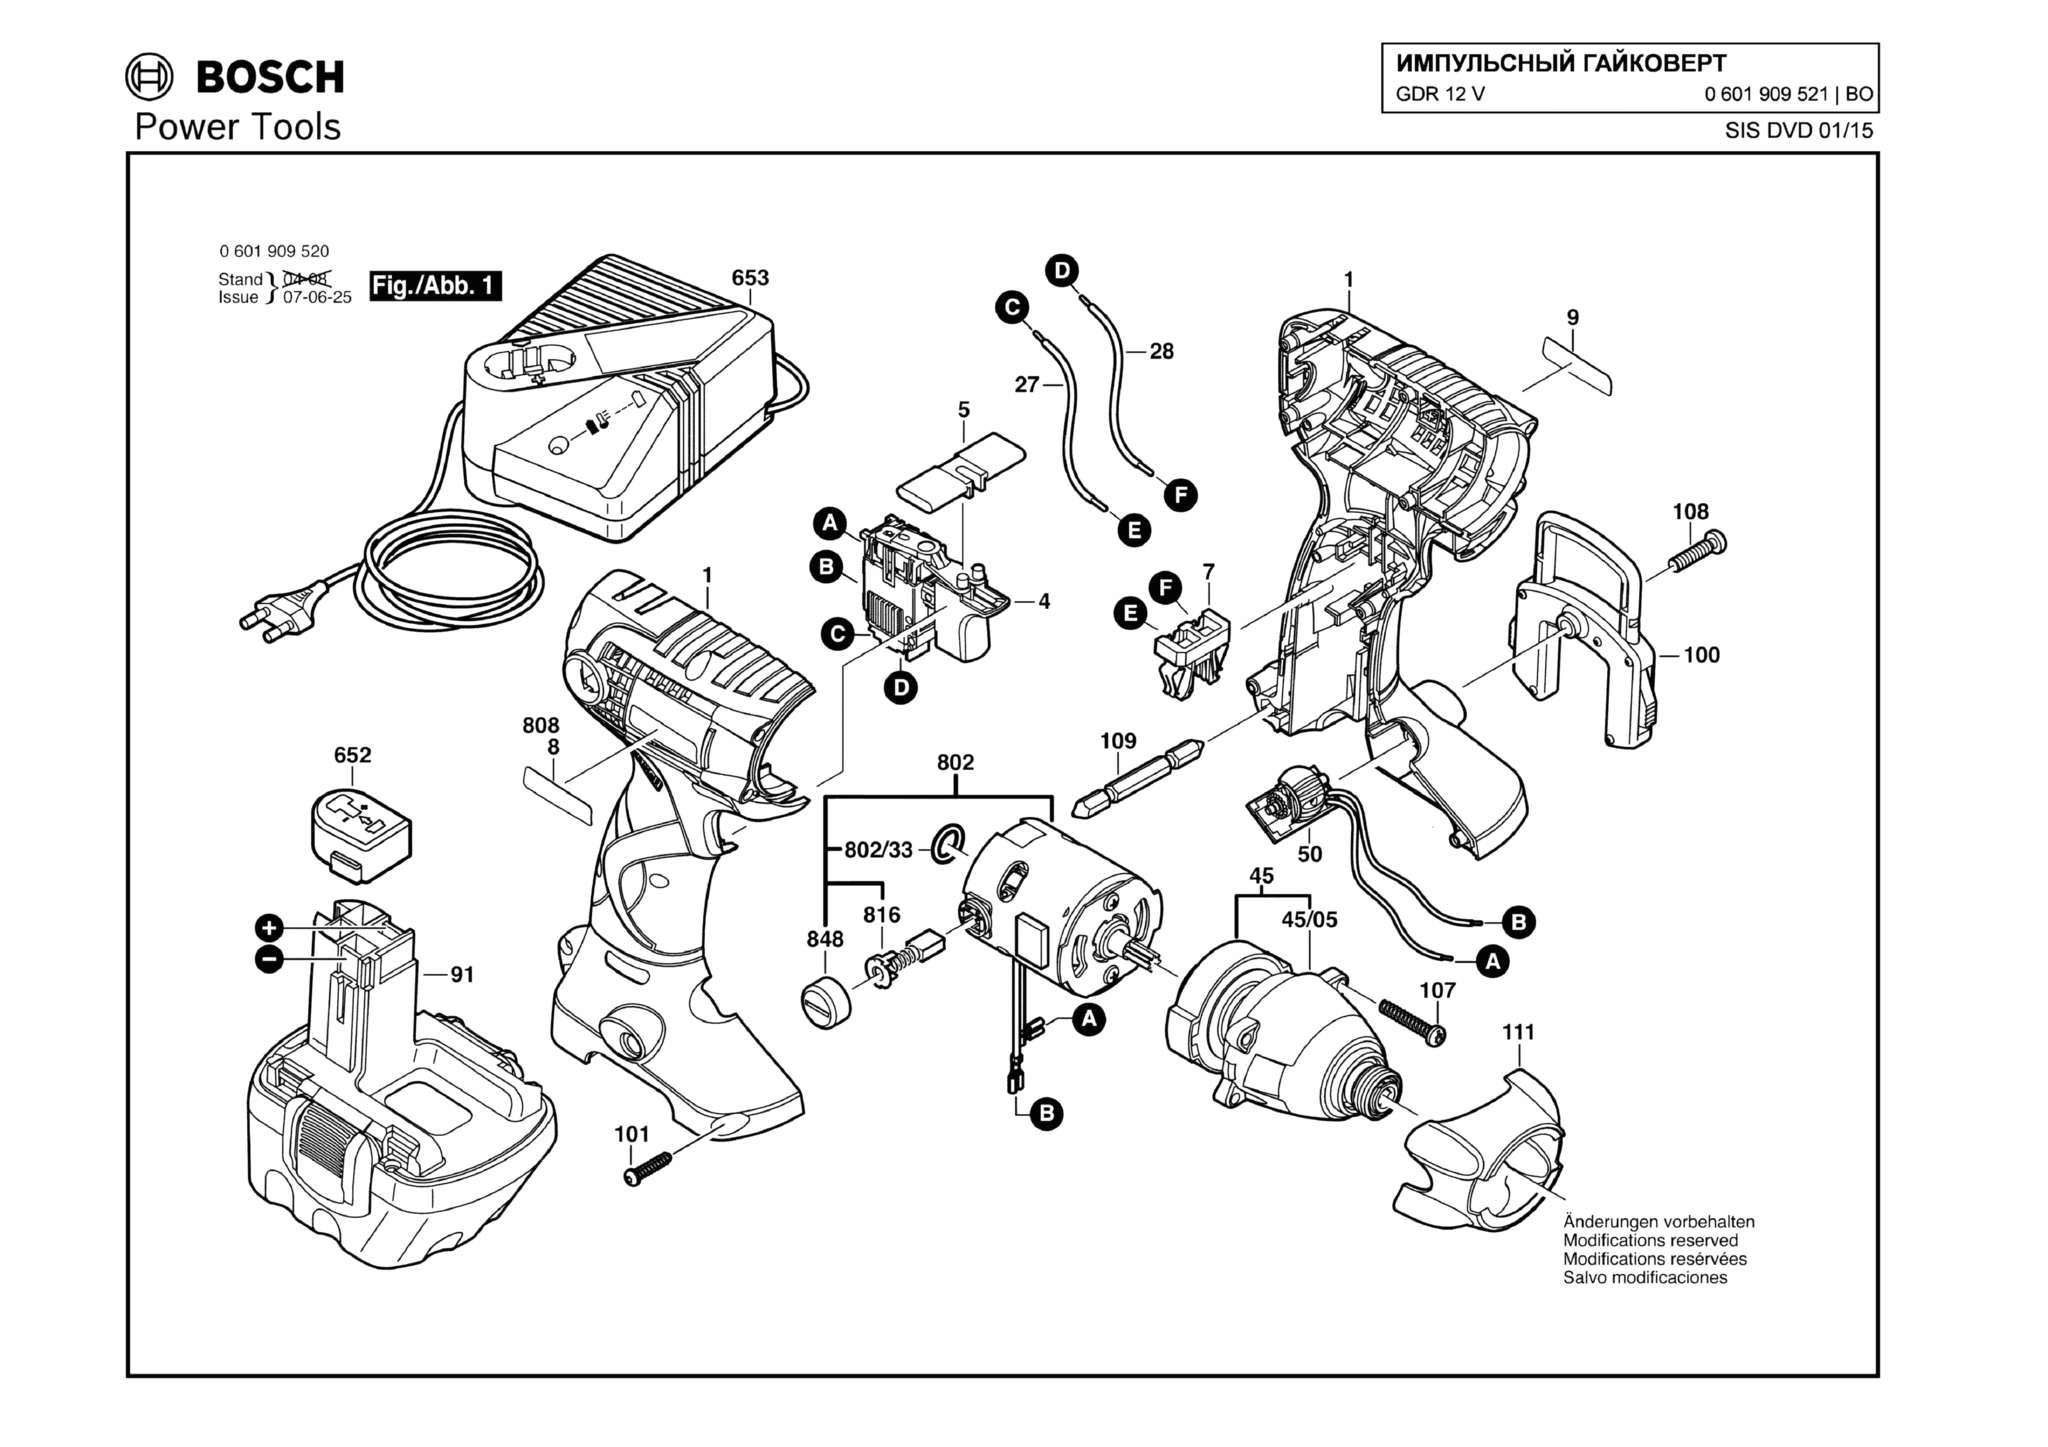 Запчасти, схема и деталировка Bosch GDR 12 V (ТИП 0601909521)